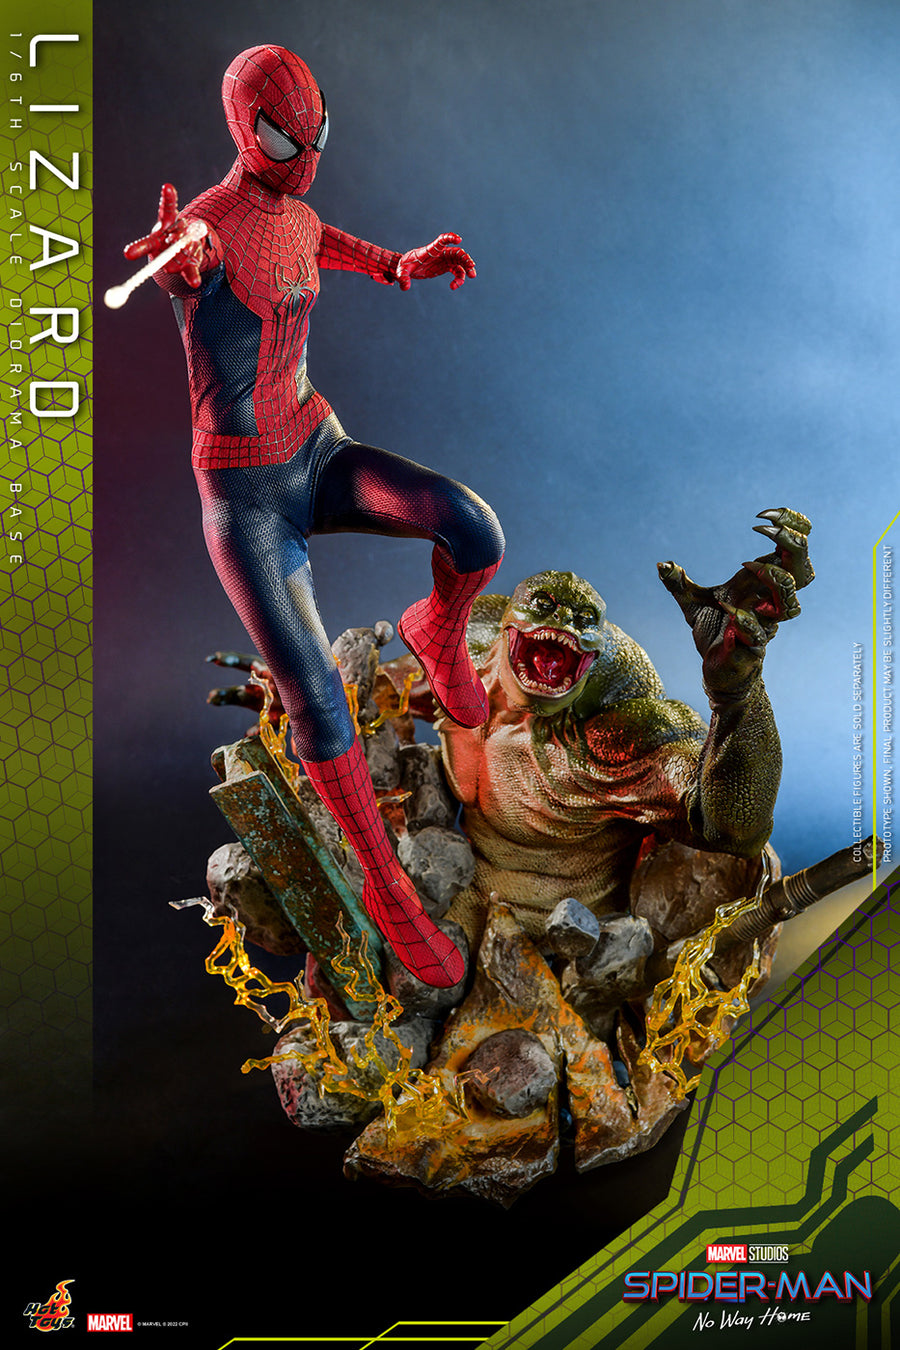 Lizard, Spider-Man(Peter Parker) - The Amazing Spider-Man 2